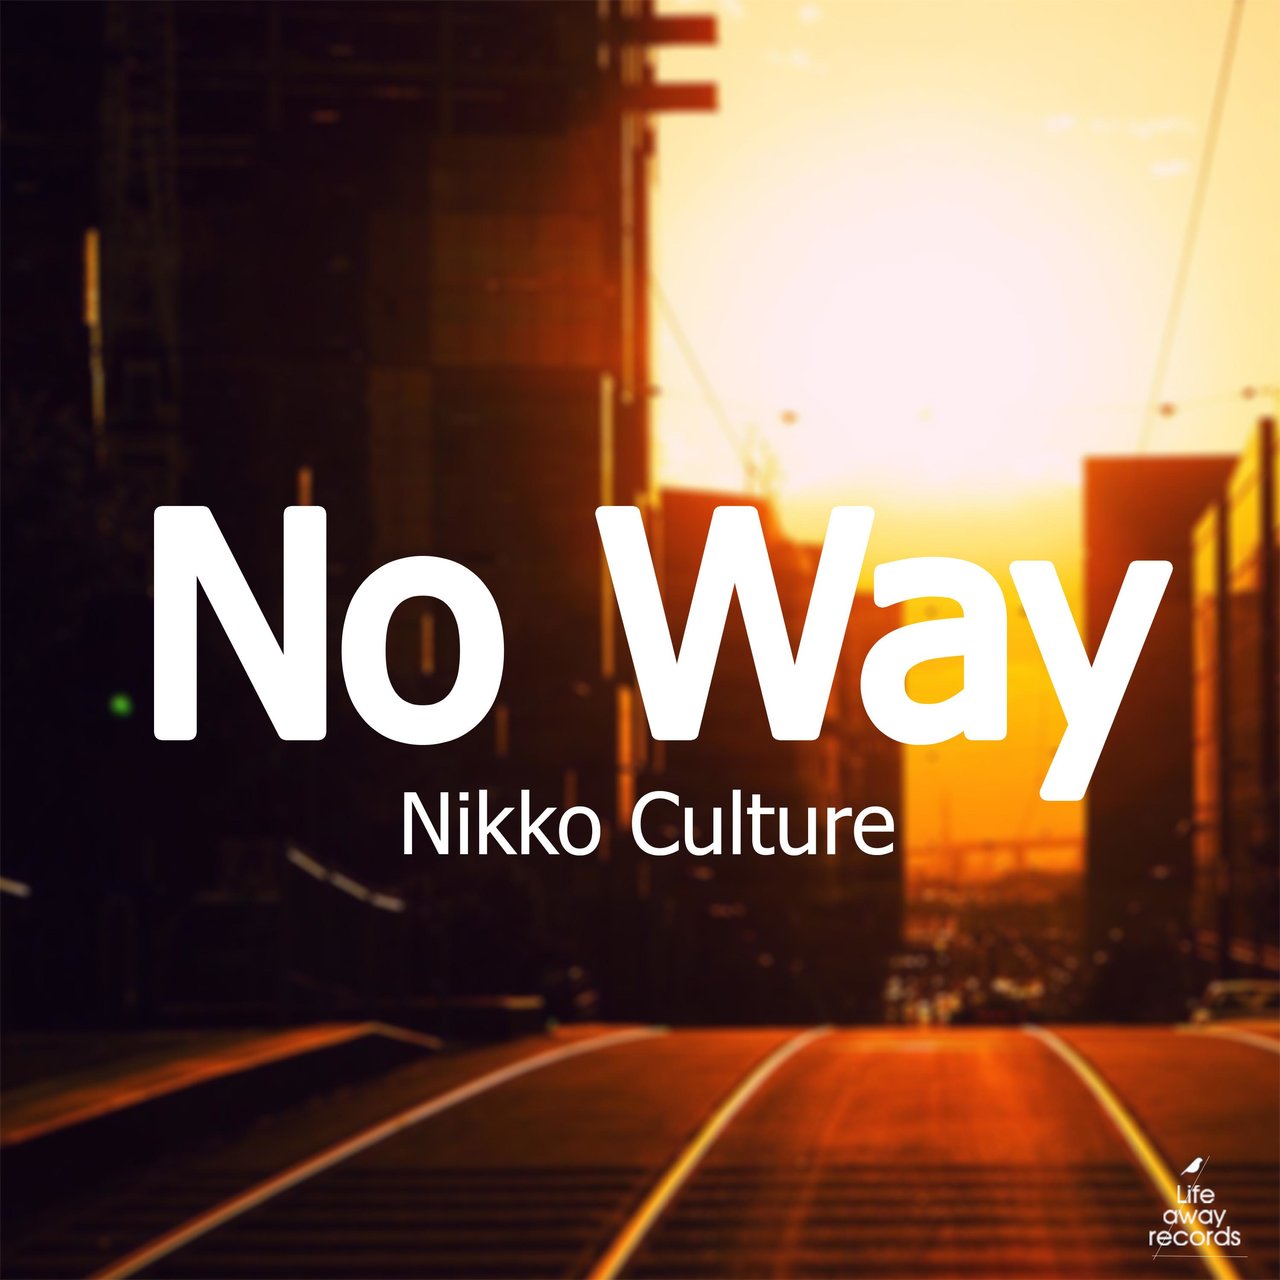 Nikko Culture - No Way (Original Mix)